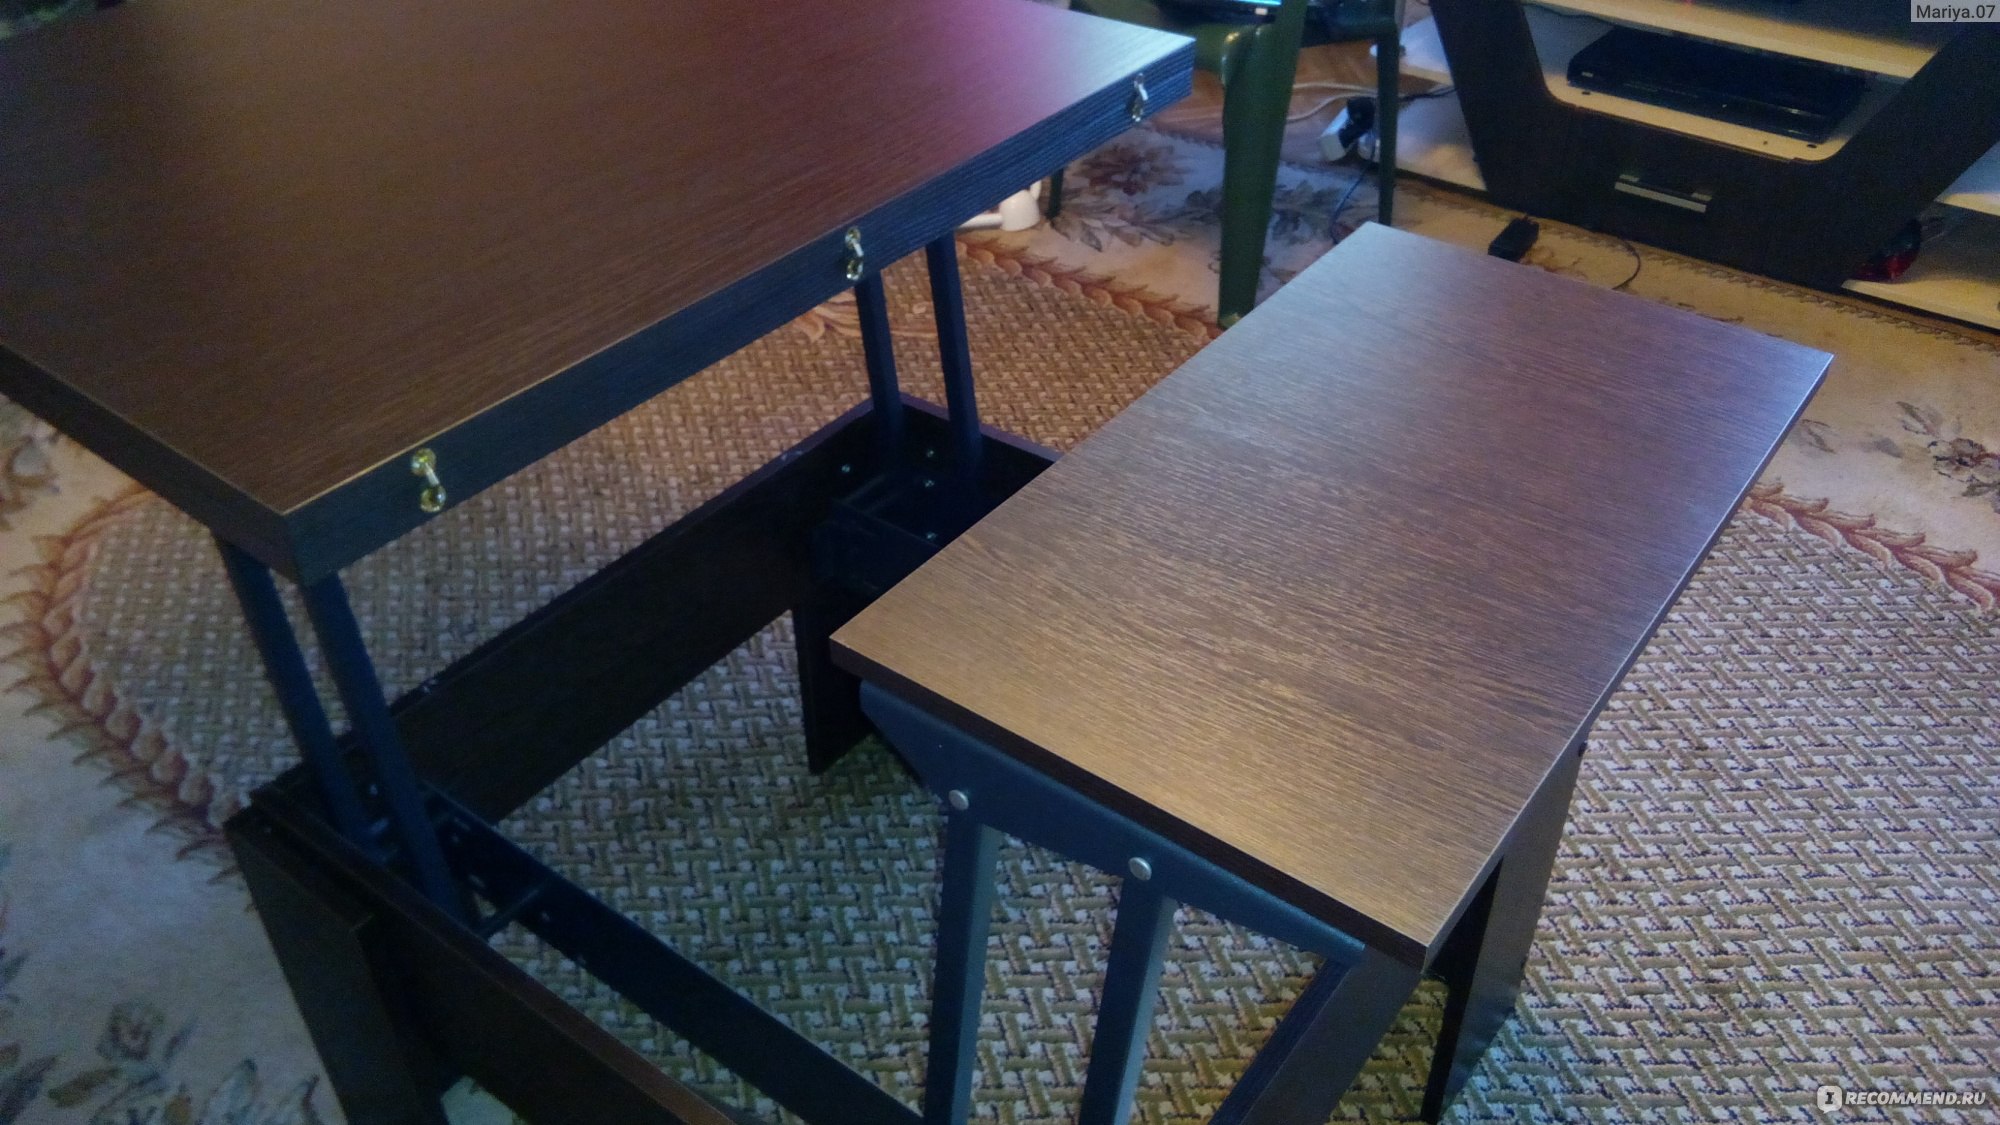 Сборка стола трансформера из много мебели lux